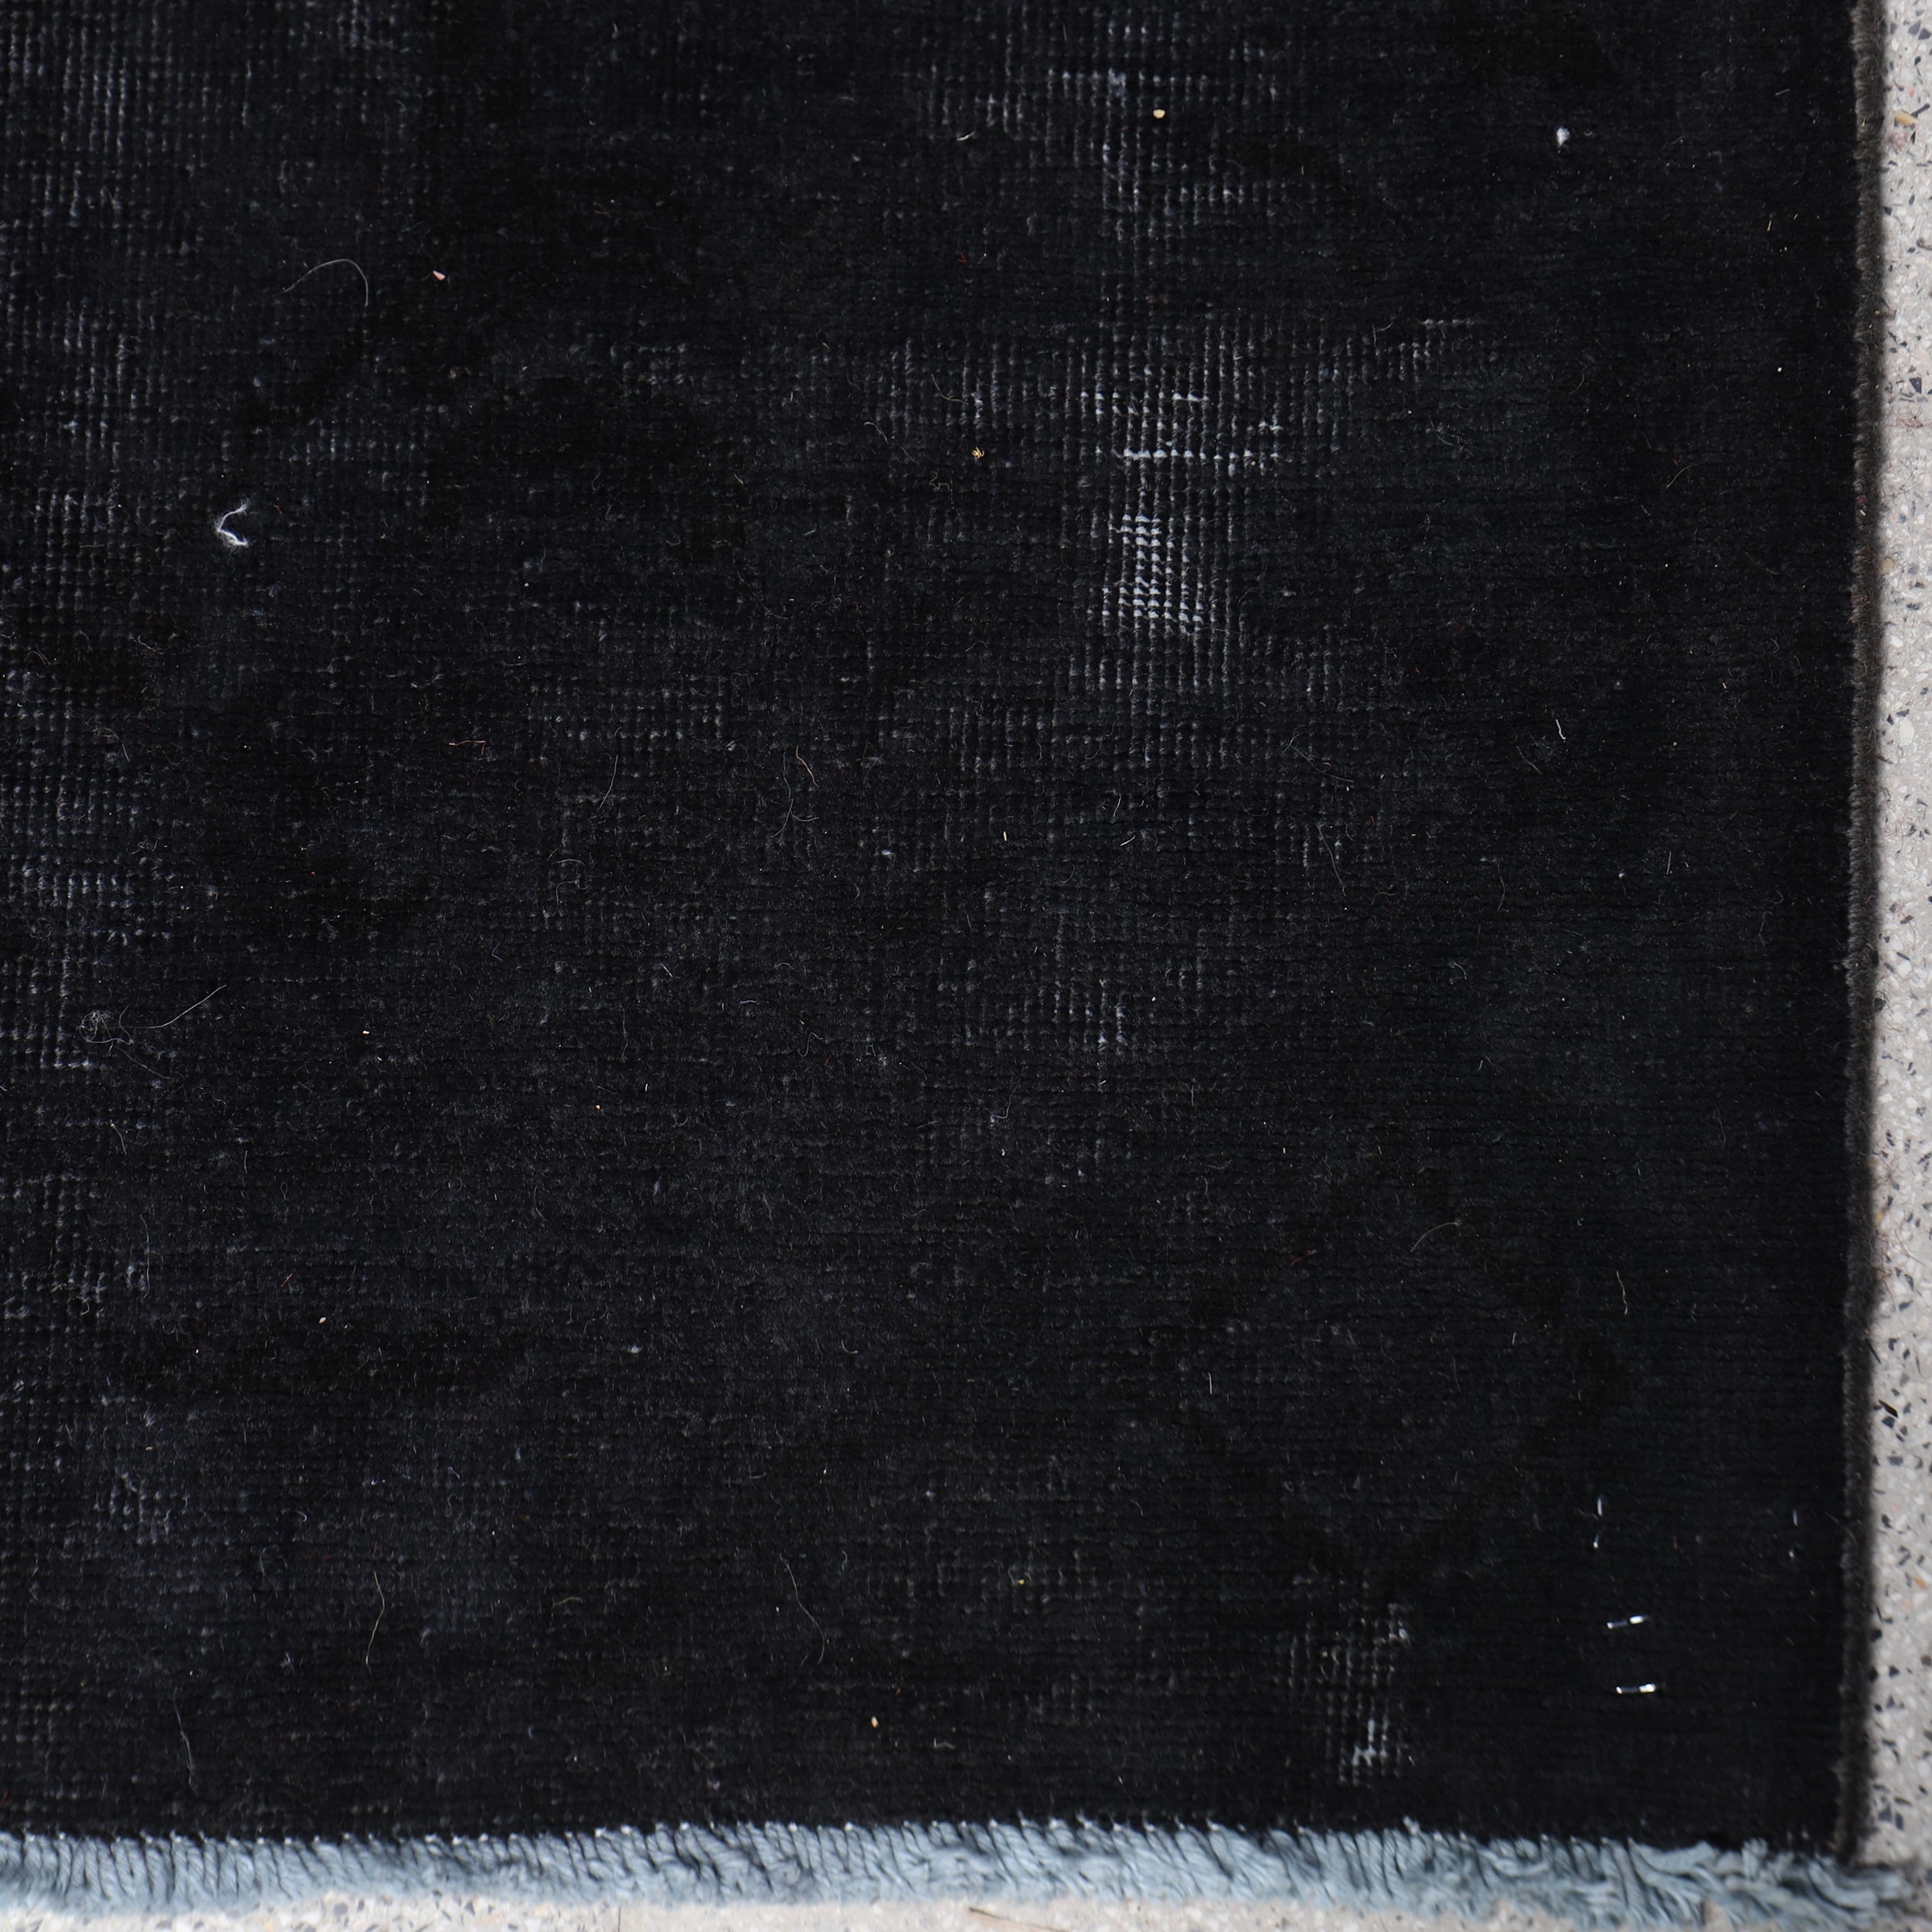 فرش دستباف شش و نیم متری طرح وینتیج کد 4020559 | سرمه ای تیره | گارانتی اصالت و سلامت فیزیکی کالا